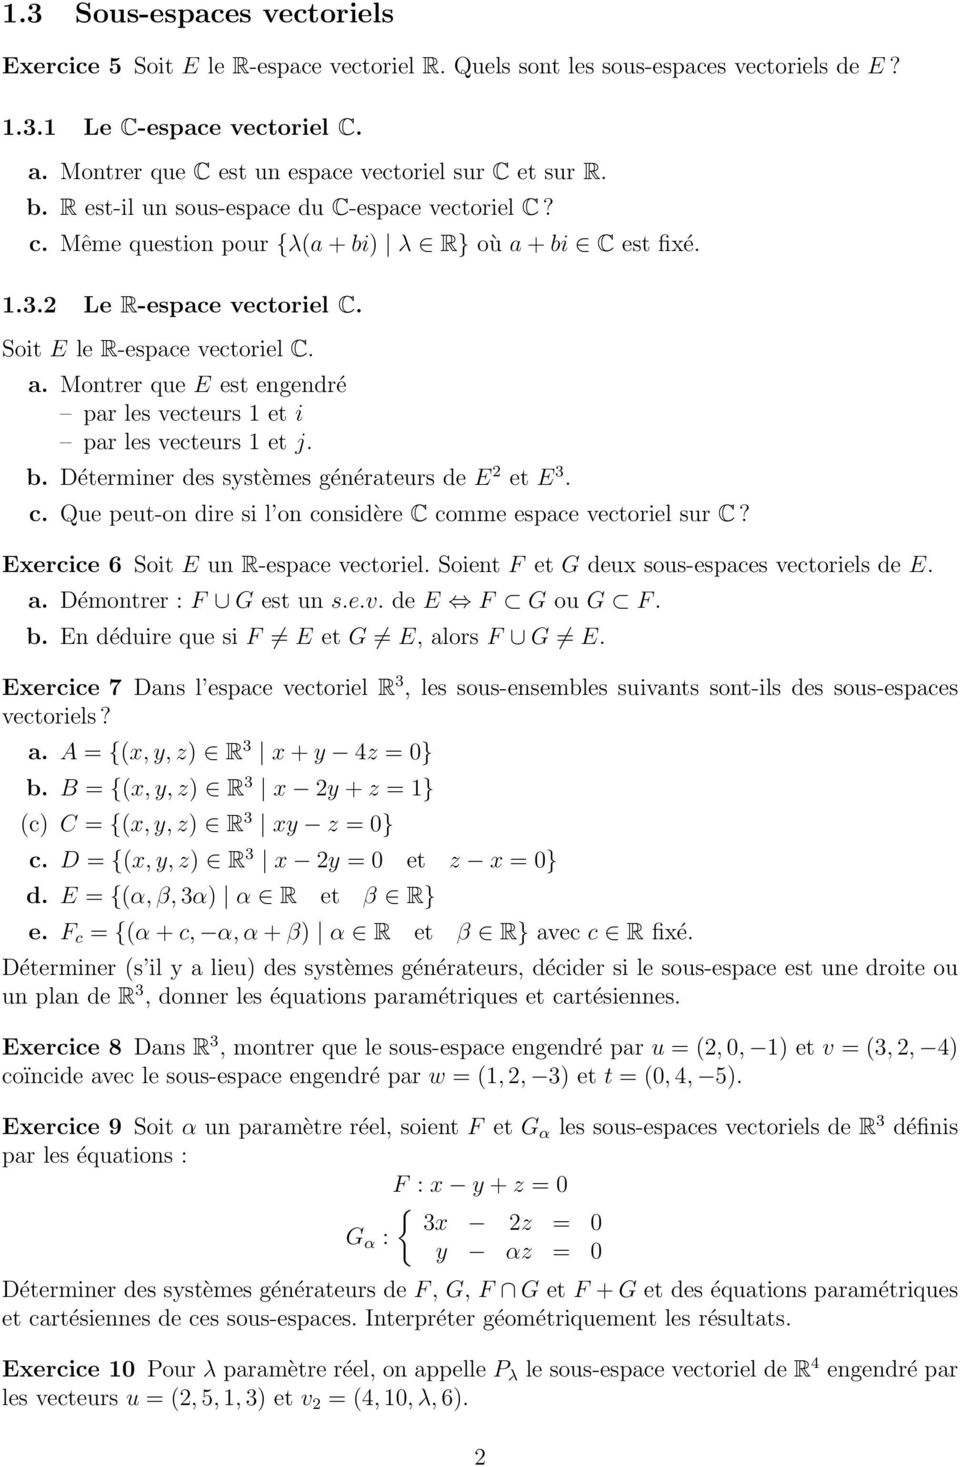 Soit E le R-espace vectoriel C. a. Montrer que E est engendré par les vecteurs 1 et i par les vecteurs 1 et j. b. Déterminer des systèmes générateurs de E 2 et E 3. c.